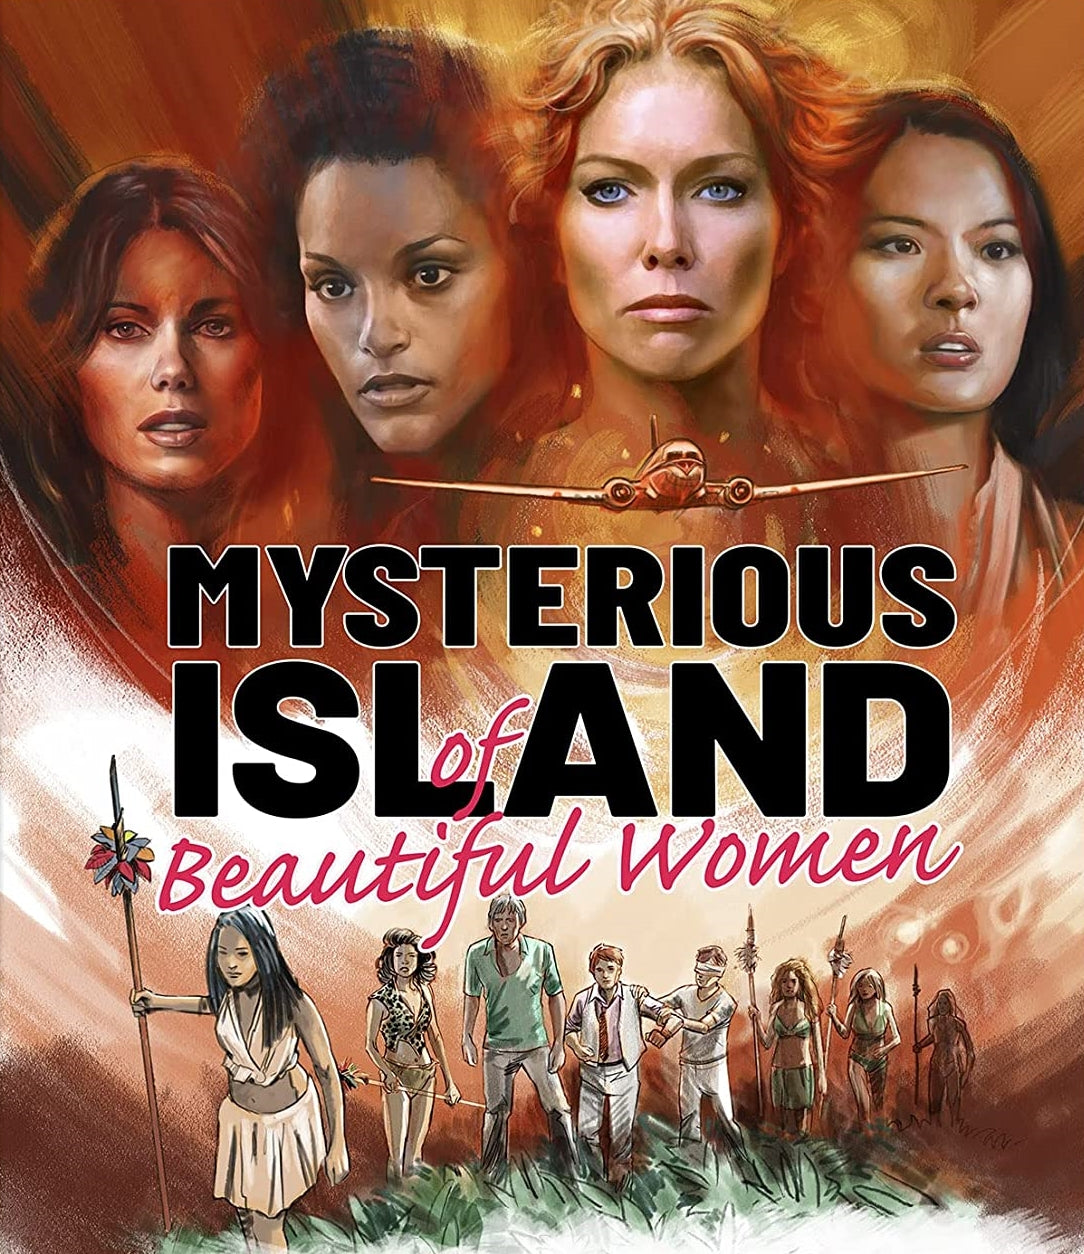 MYSTERIOUS ISLAND OF BEAUTIFUL WOMEN BLU-RAY